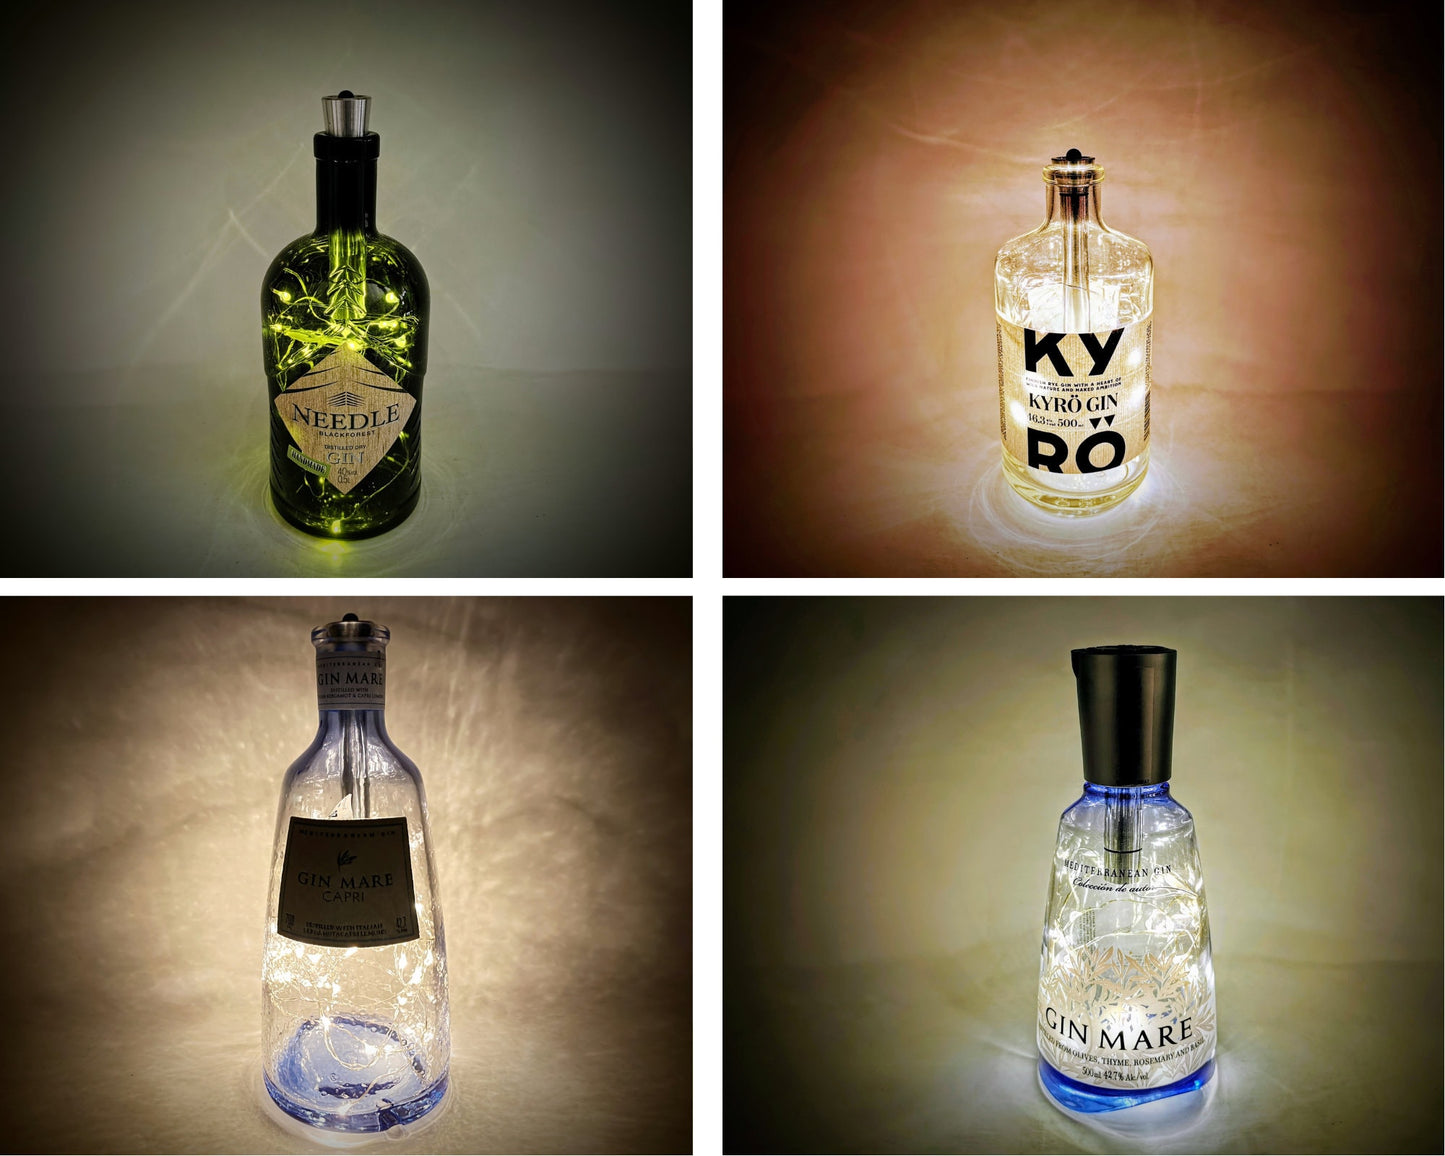 Gin-Glow - Die Magischen LED-Flaschen | Upcycling Gin-Flaschen mit LED-Licht | LED-Flaschen-Lampen für Bar und Vitrine | Inklusive Timer